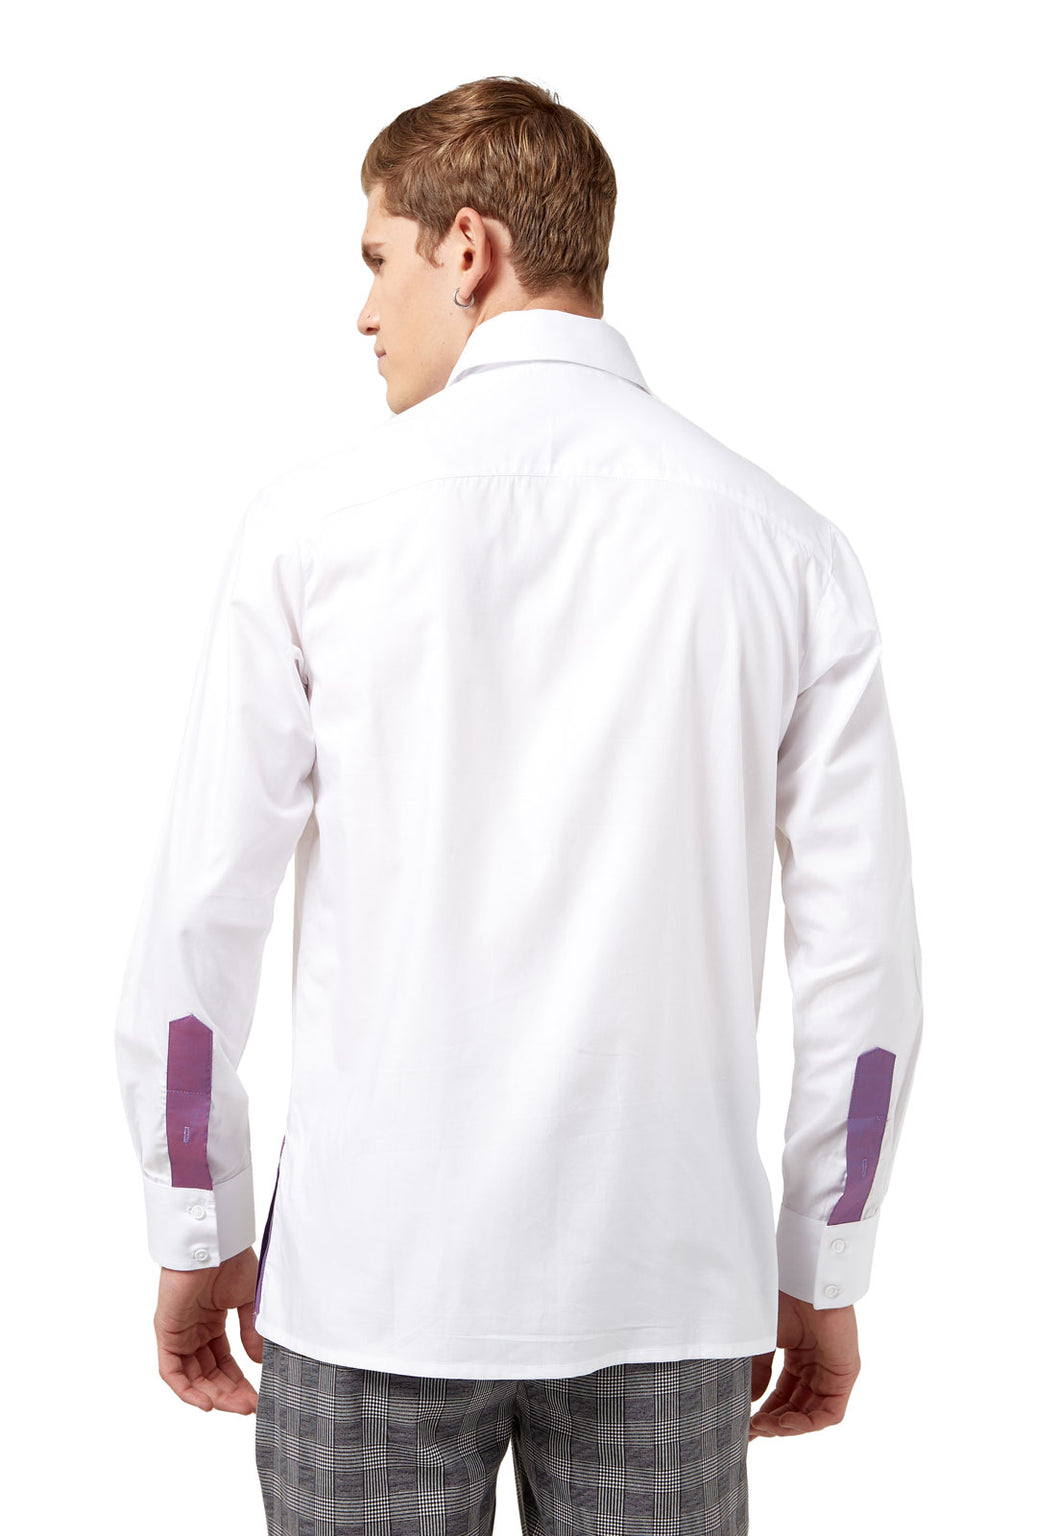 Camisa elegante para hombre blanca con apliques en morado tornasol, hecha en Bogotá,  Colombia